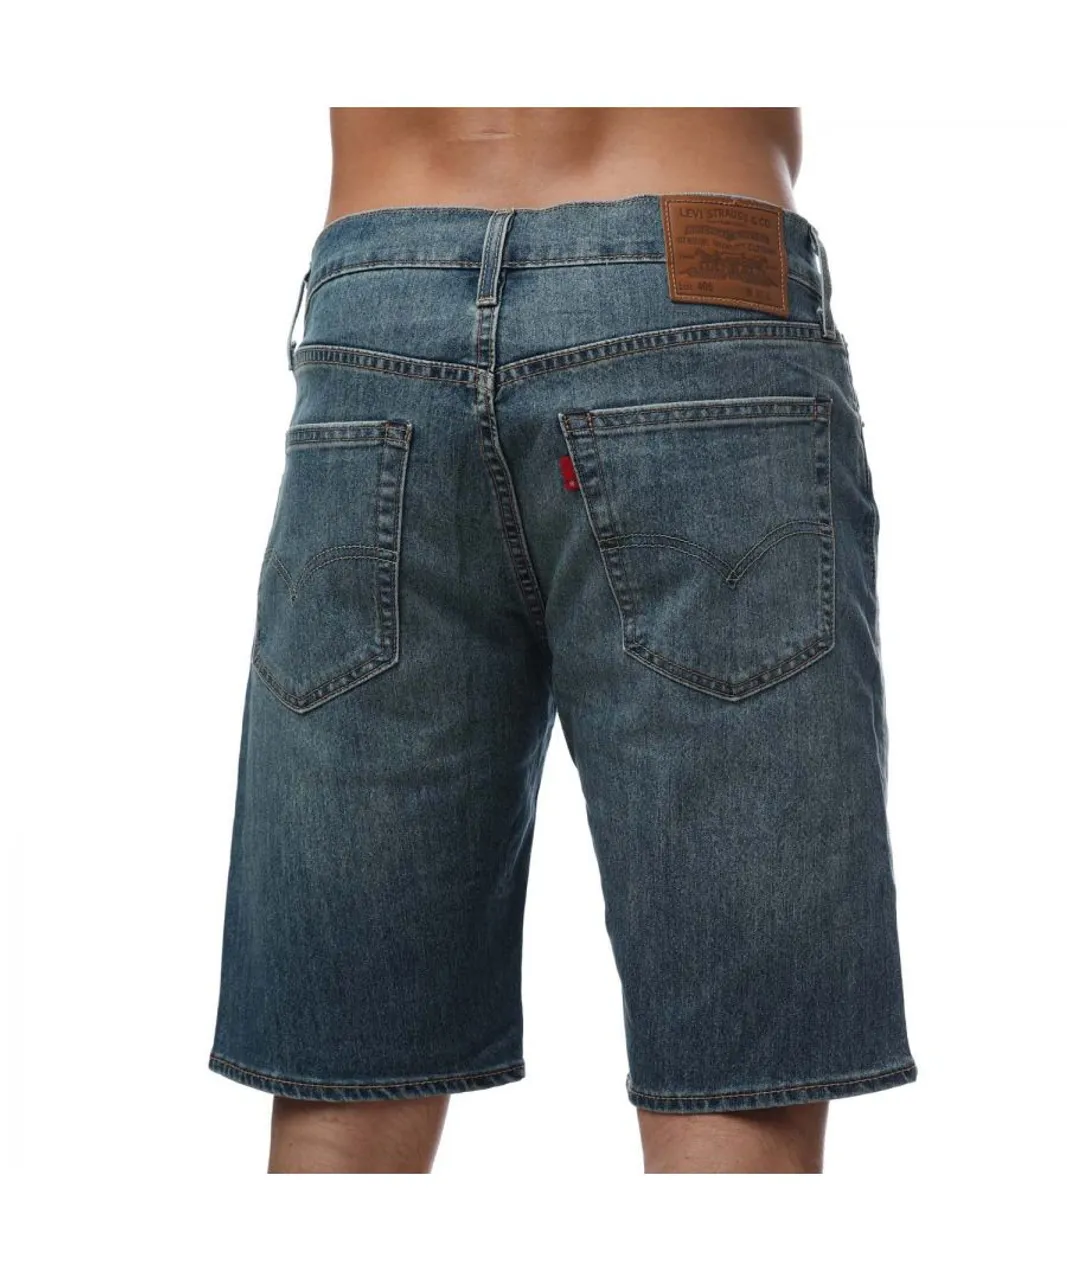 Levi's Mens Levis Standard Shorts in Blue Cotton